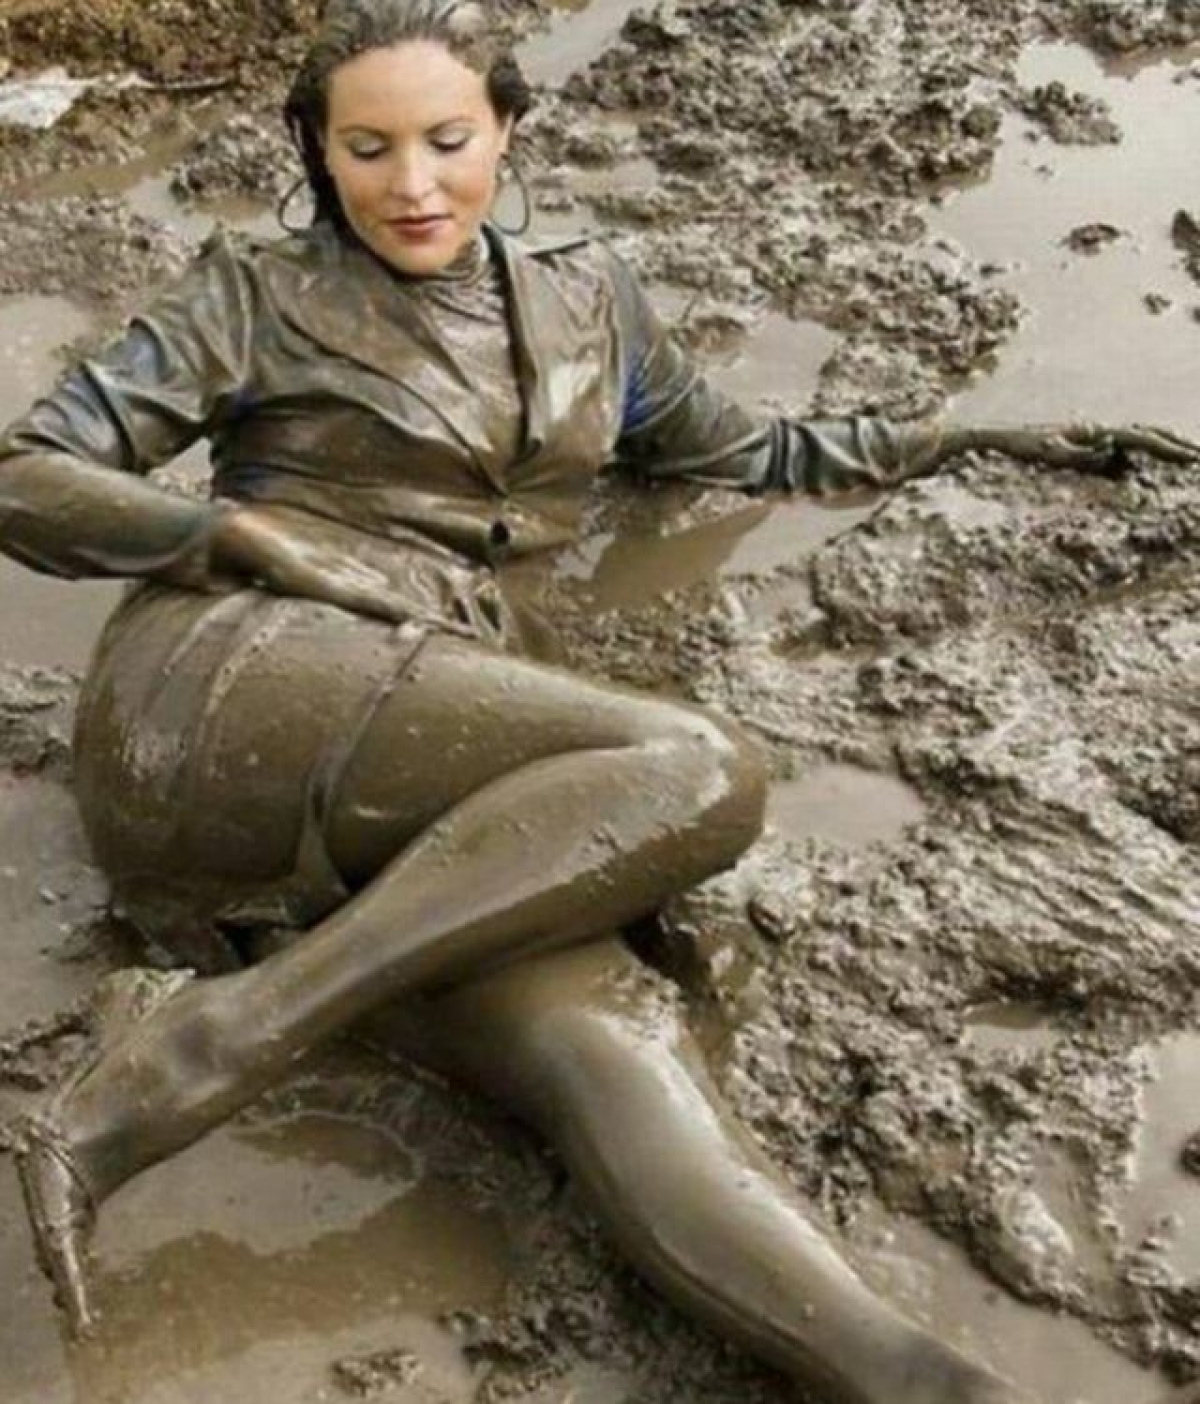 Тетка моется. Девушки в грязи в одежде. Девочки купаются в грязи.